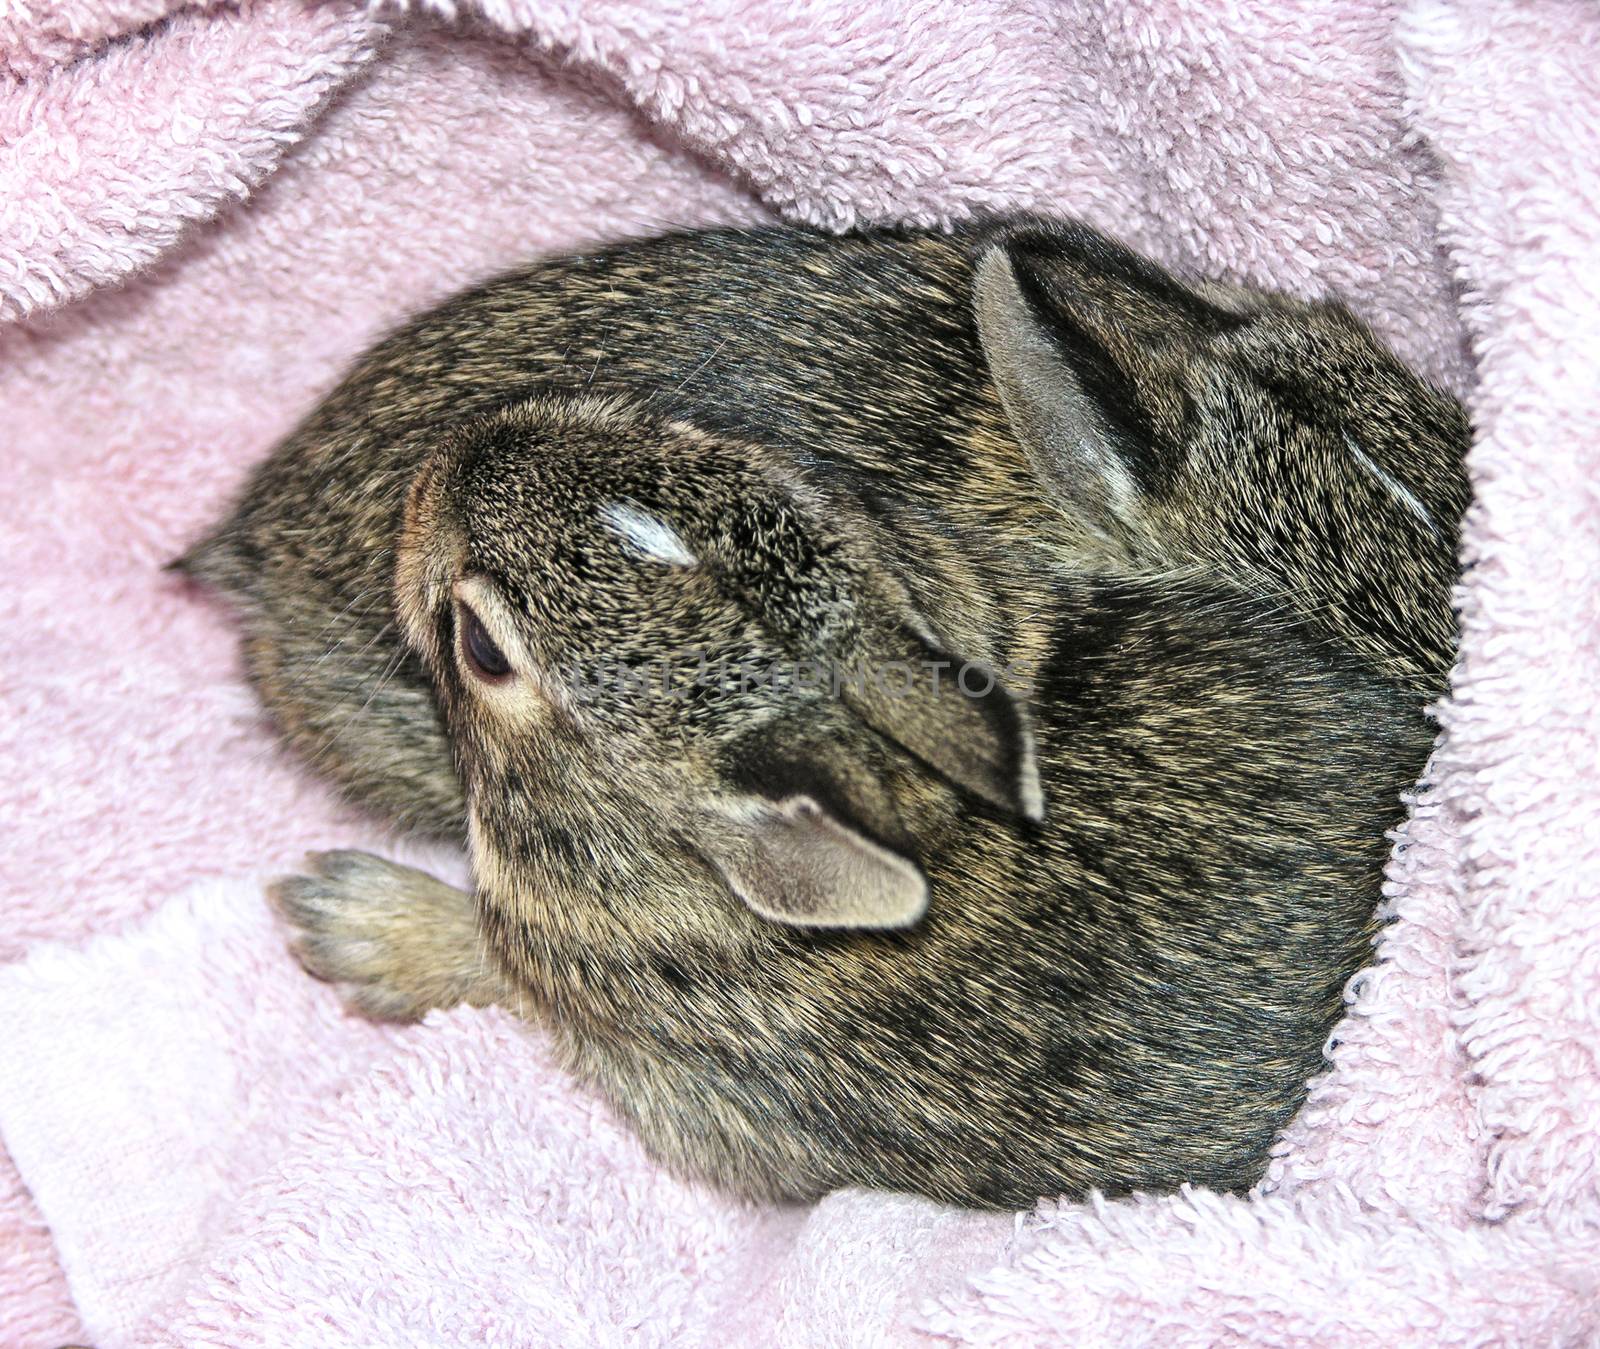 Baby Rabbits by jimlarkin